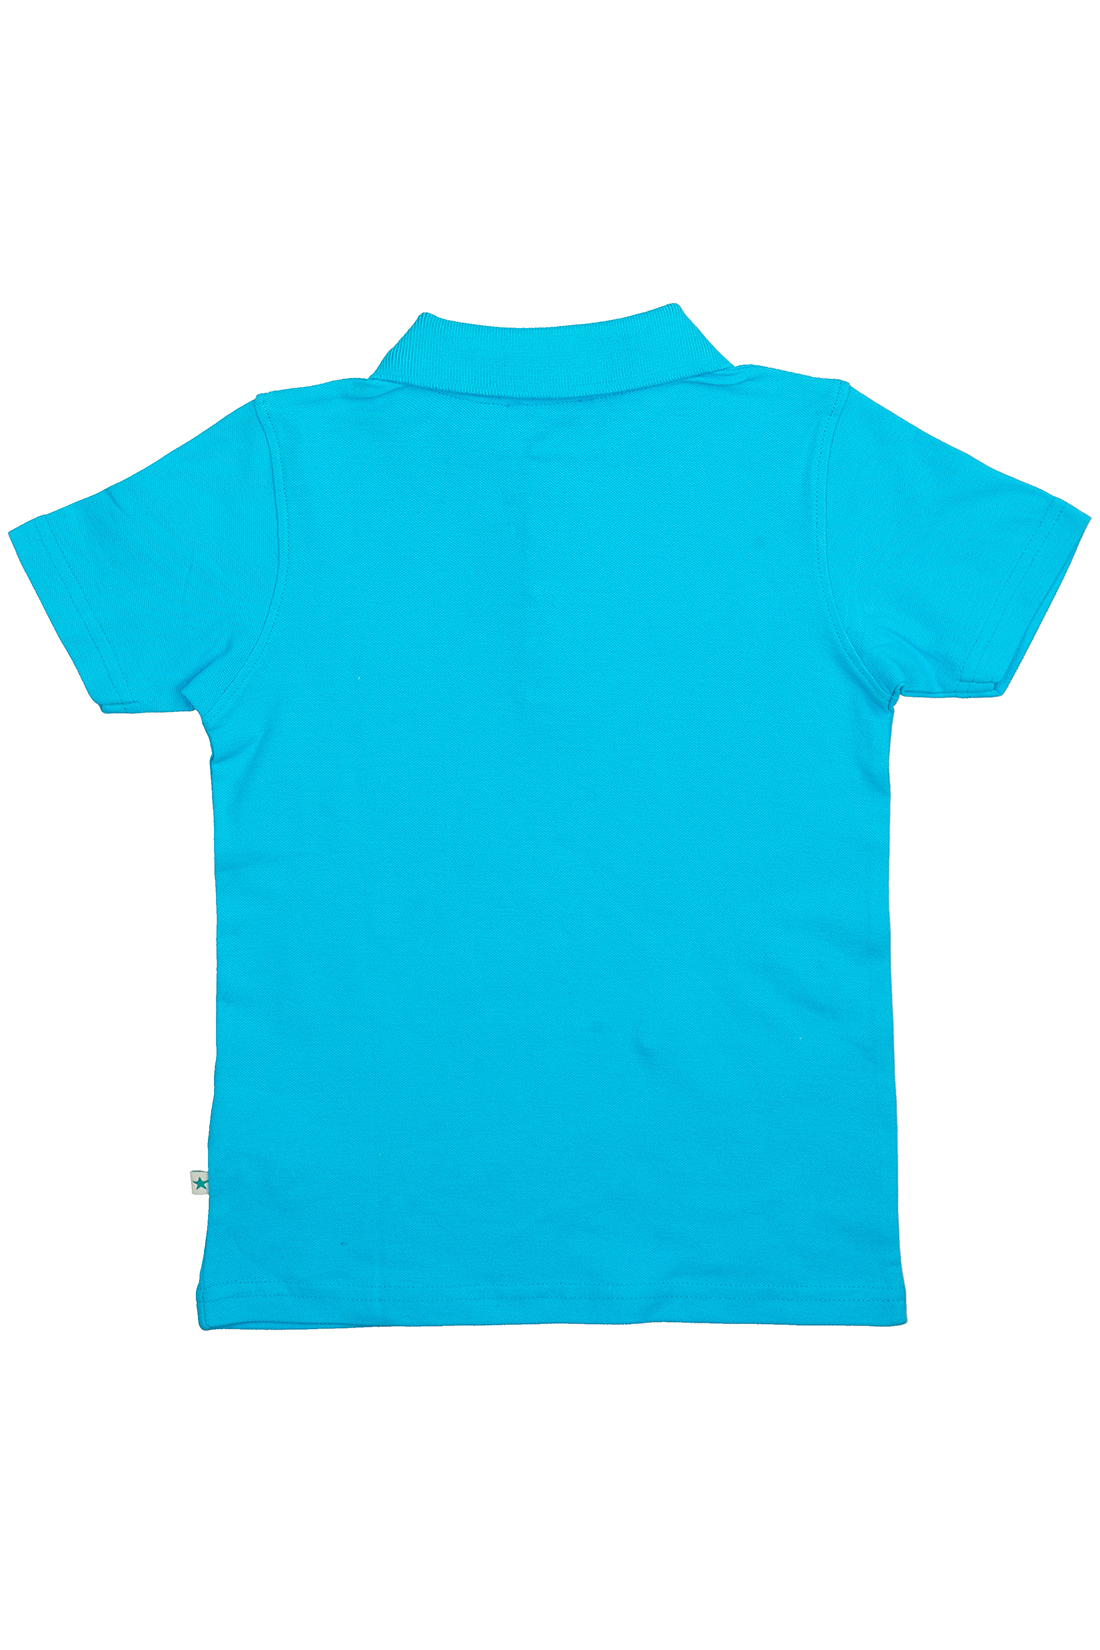 Поло для мальчика (арт. baon BK708003), размер 98-104, цвет голубой Поло для мальчика (арт. baon BK708003) - фото 3